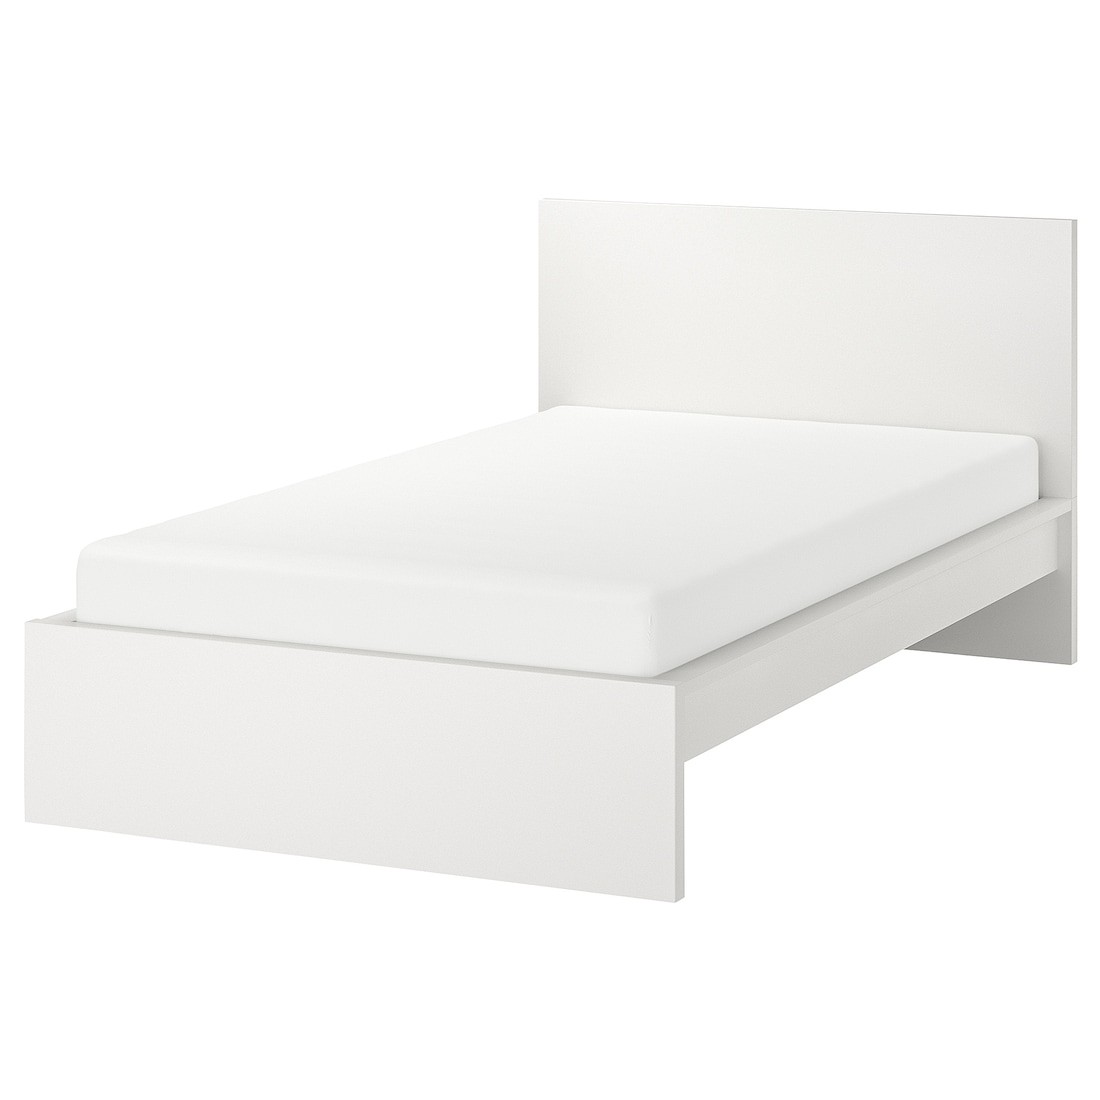 MALM МАЛЬМ Ліжко односпальне, високе, білий / Lönset, 120x200 cм